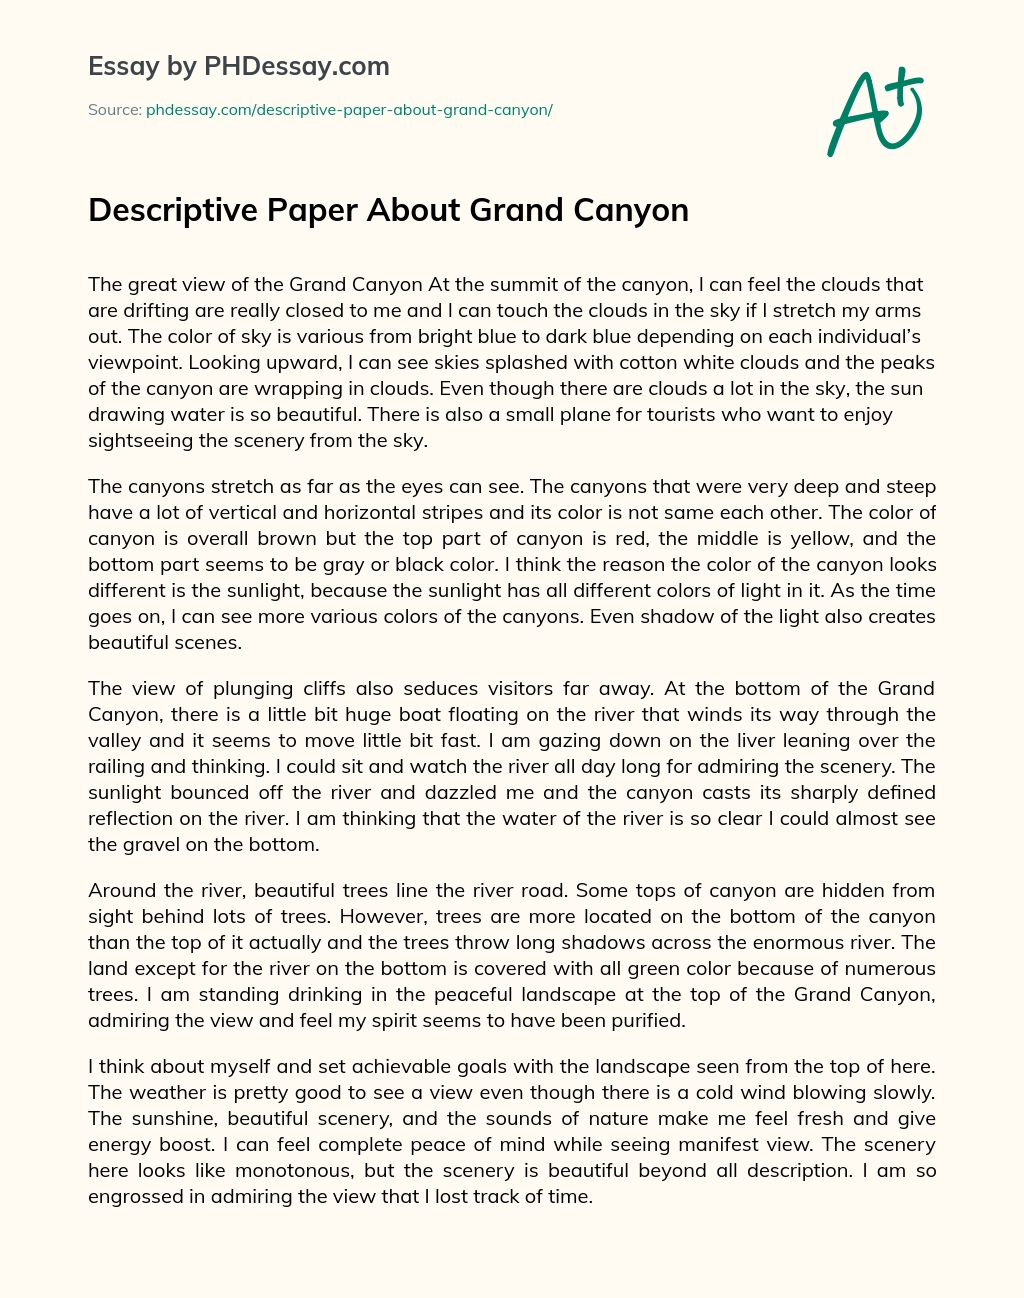 Descriptive Paper About Grand Canyon essay